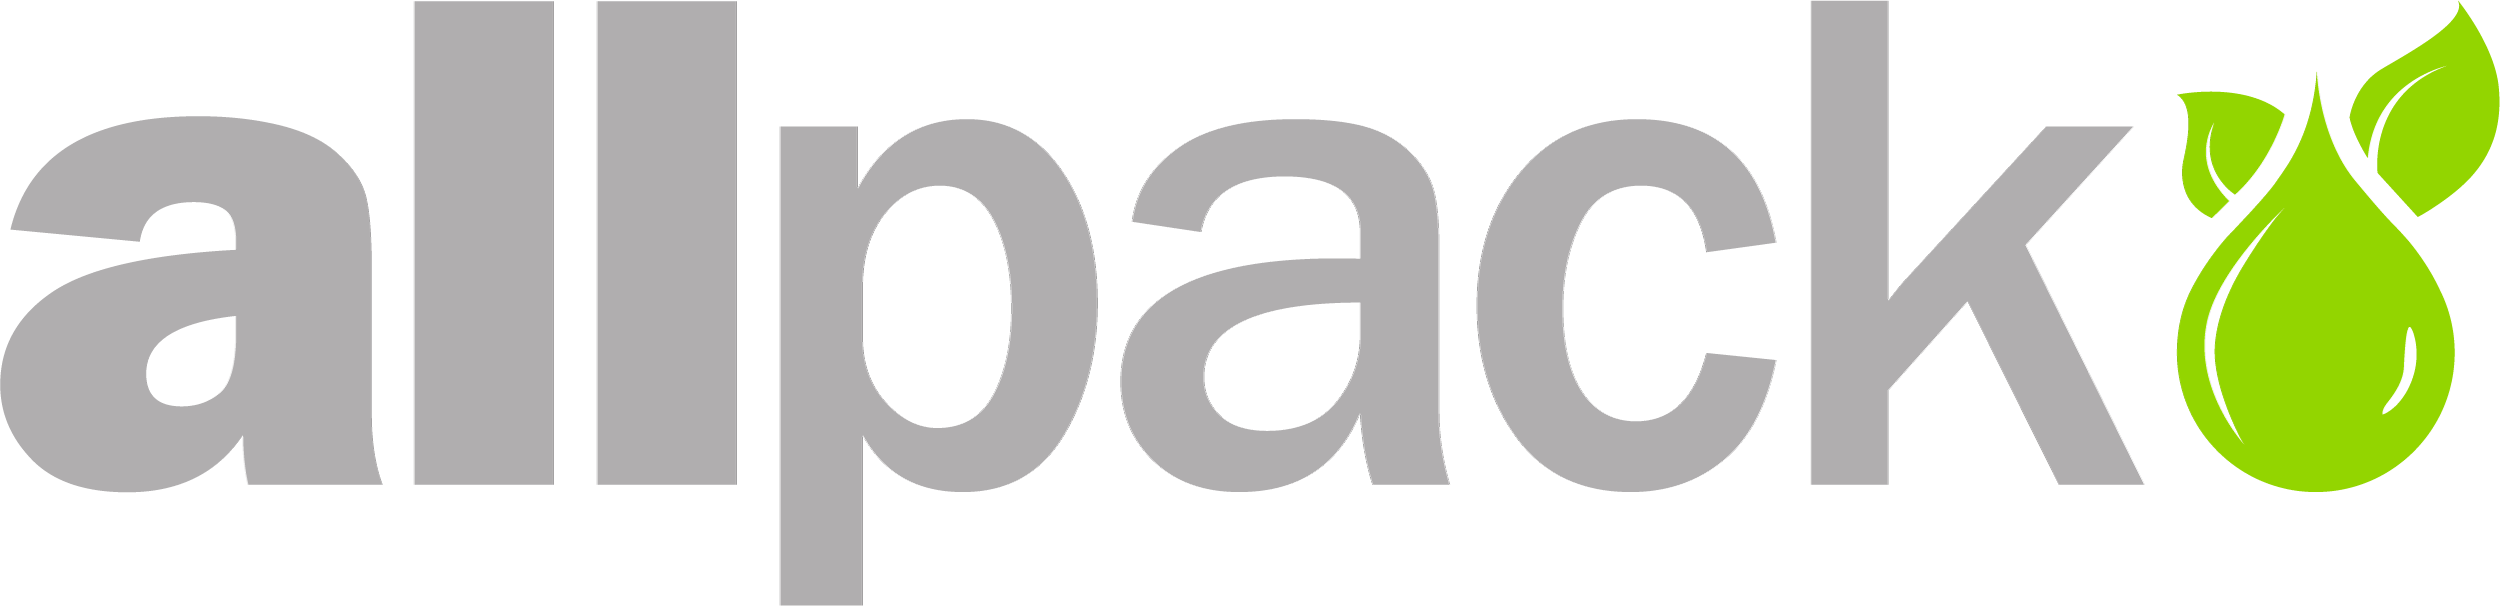 Allpack logo